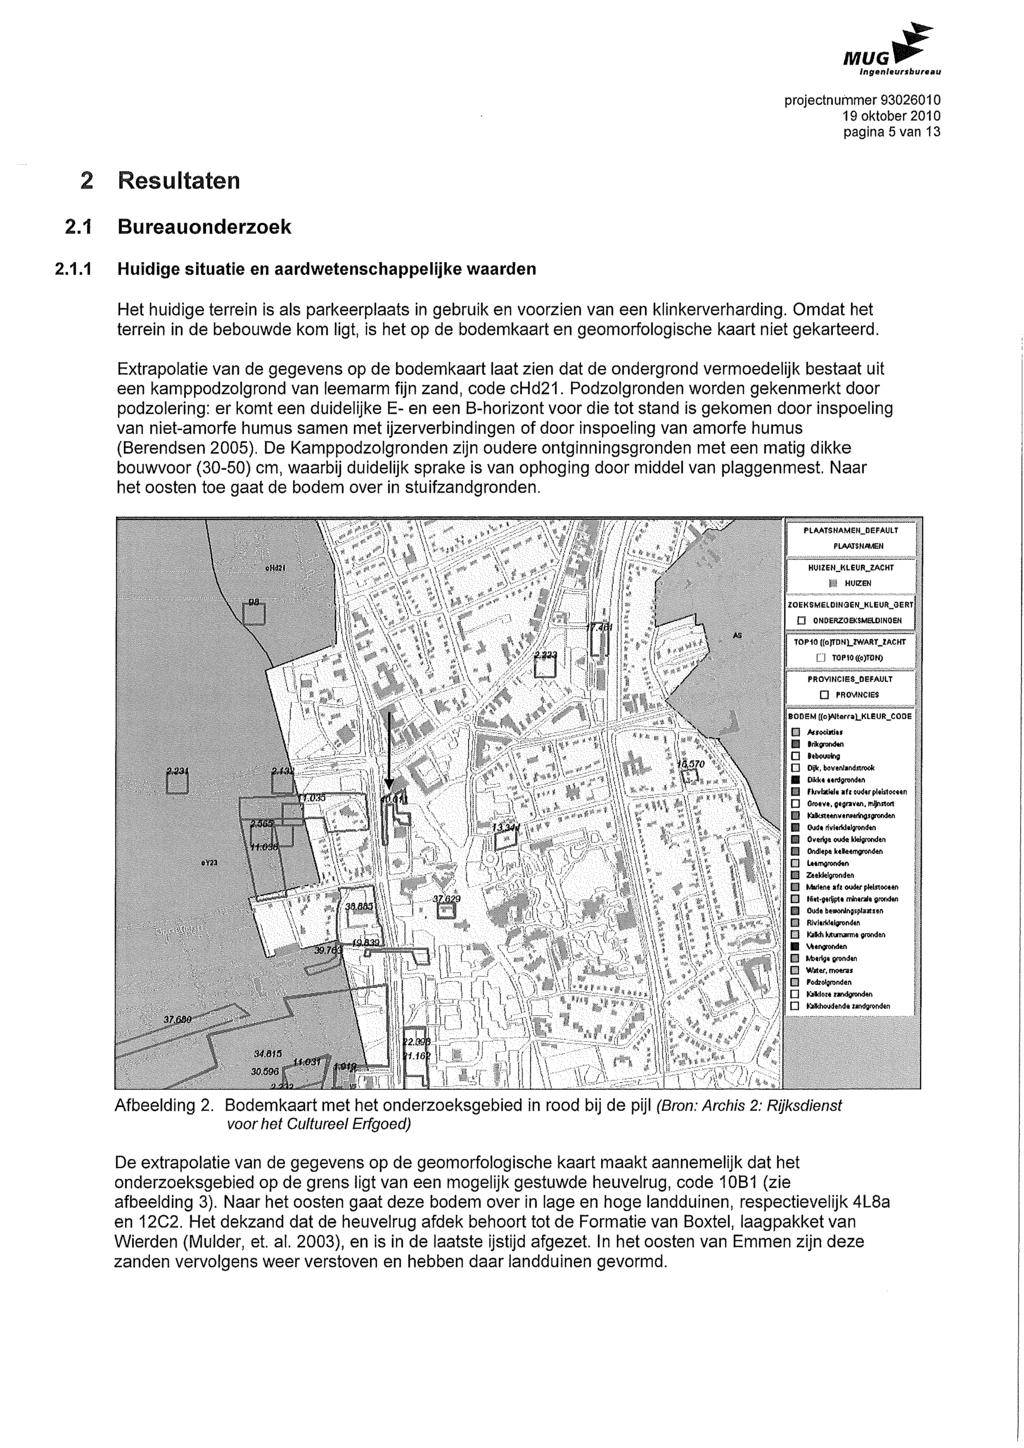 MUG pagina 5 van 13 2 Resultaten 2.1 Bureauonderzoek 2.1.1 Huidige situatie en aardwetenschappelijke waarden Het huidige terrein is als parkeerplaats in gebruik en voorzien van een klinkerverharding.